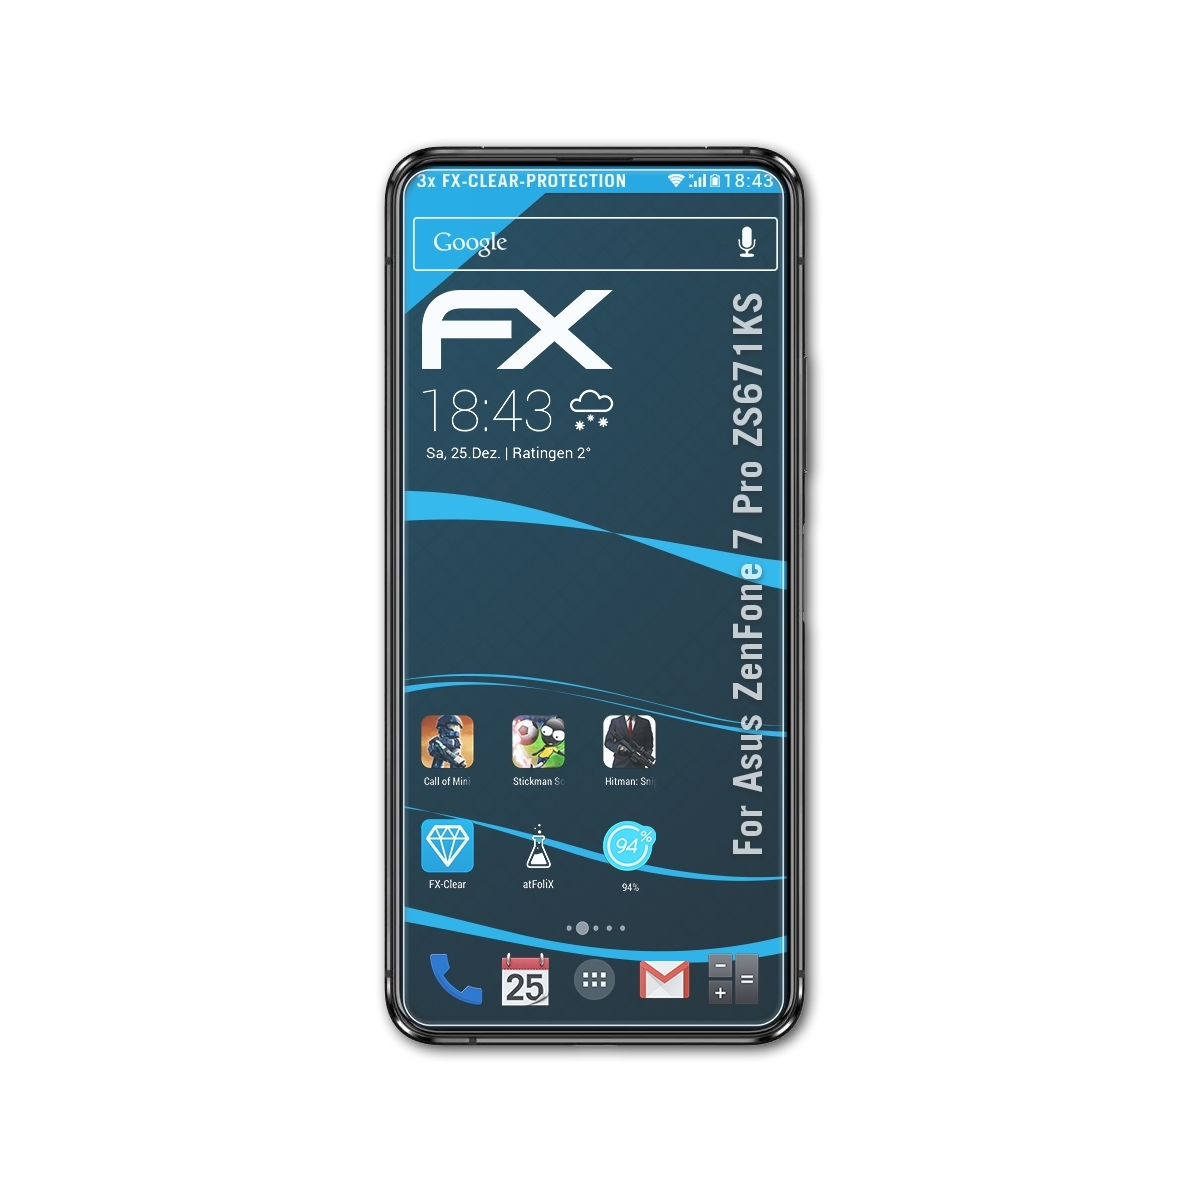 FX-Clear (ZS671KS)) ZenFone Asus 7 3x Displayschutz(für Pro ATFOLIX